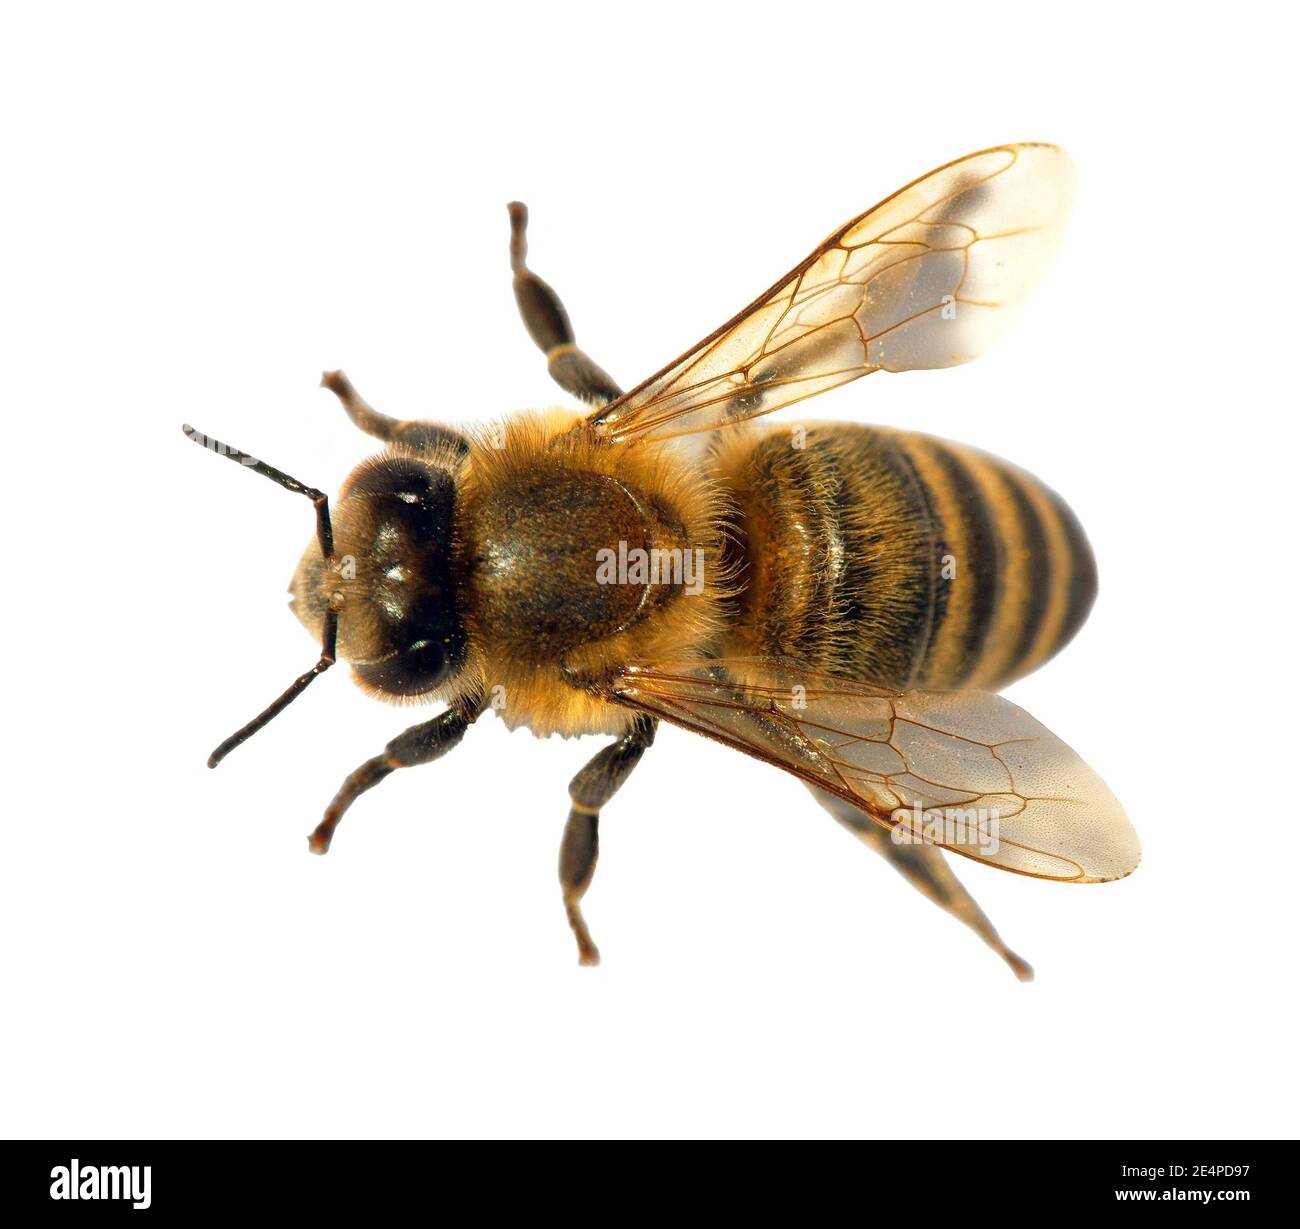 Detail der Biene oder Honigbiene in Latein APIs Mellifera, europäische oder westliche Honigbiene isoliert auf dem weißen Hintergrund, goldene Honigbiene Stockfoto